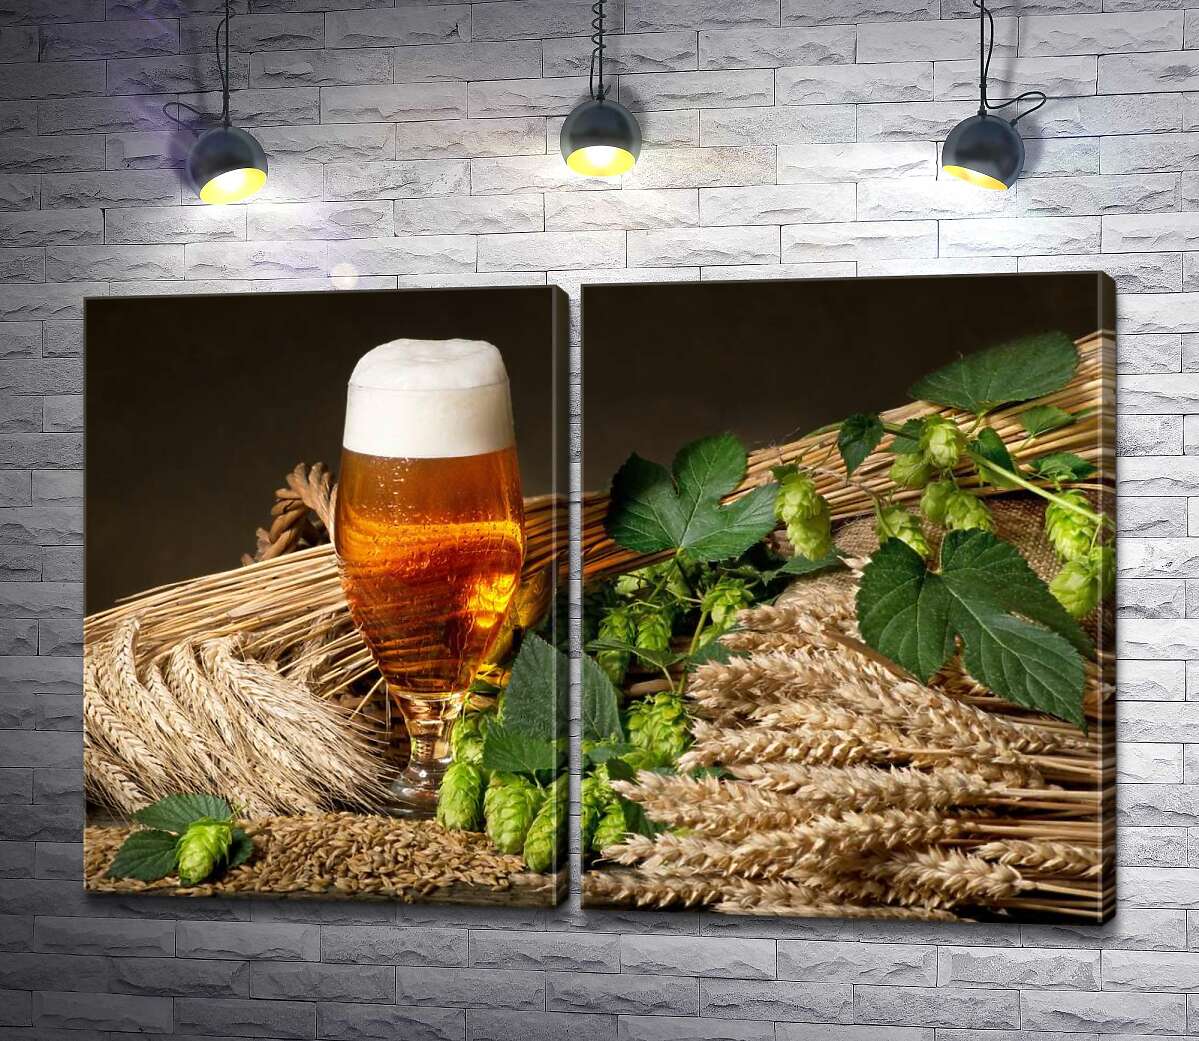 модульная картина Стакан янтарного пива среди снопов пшеницы, ячменя и зеленых головок хмеля